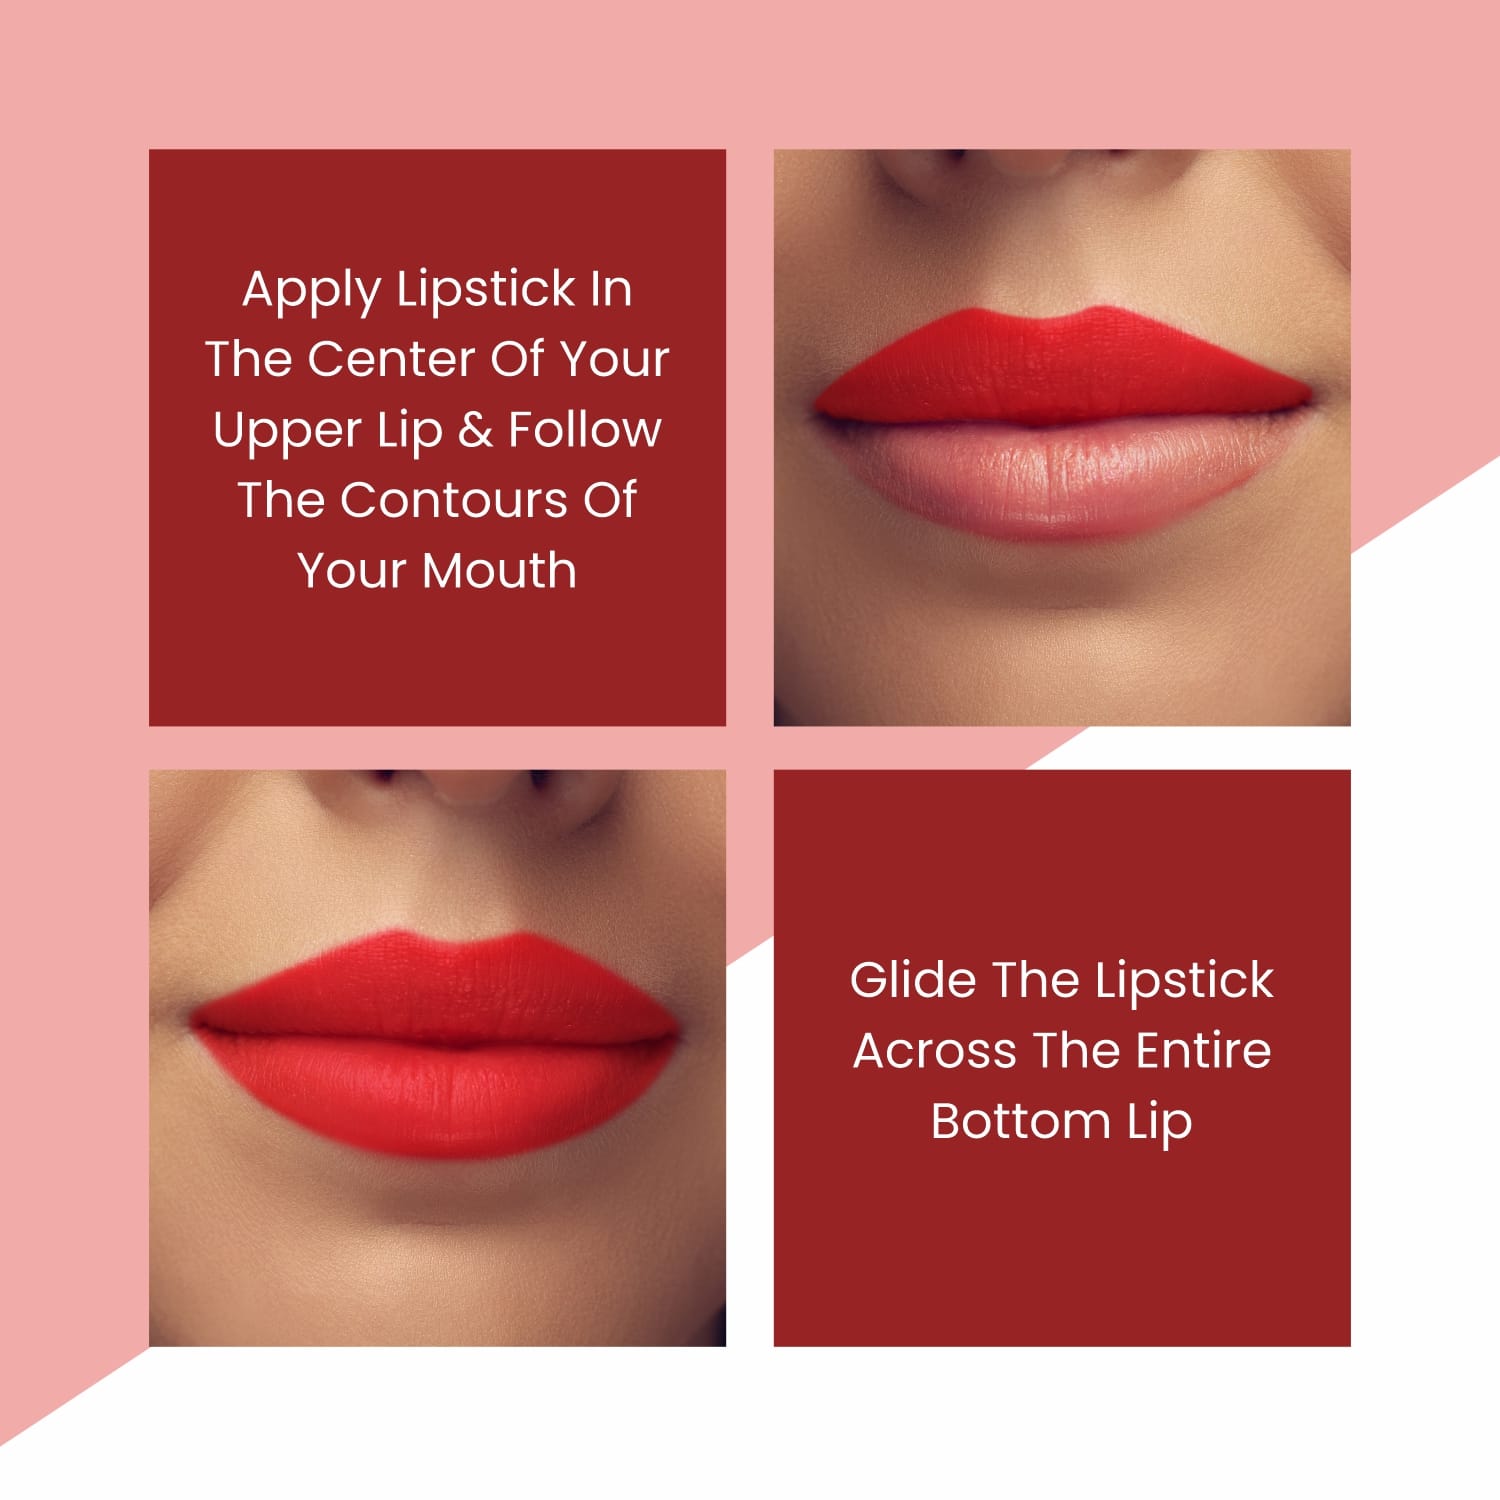 So'Bio Etic Pure Color Satin Matte Lipstick - Matte Lipstick